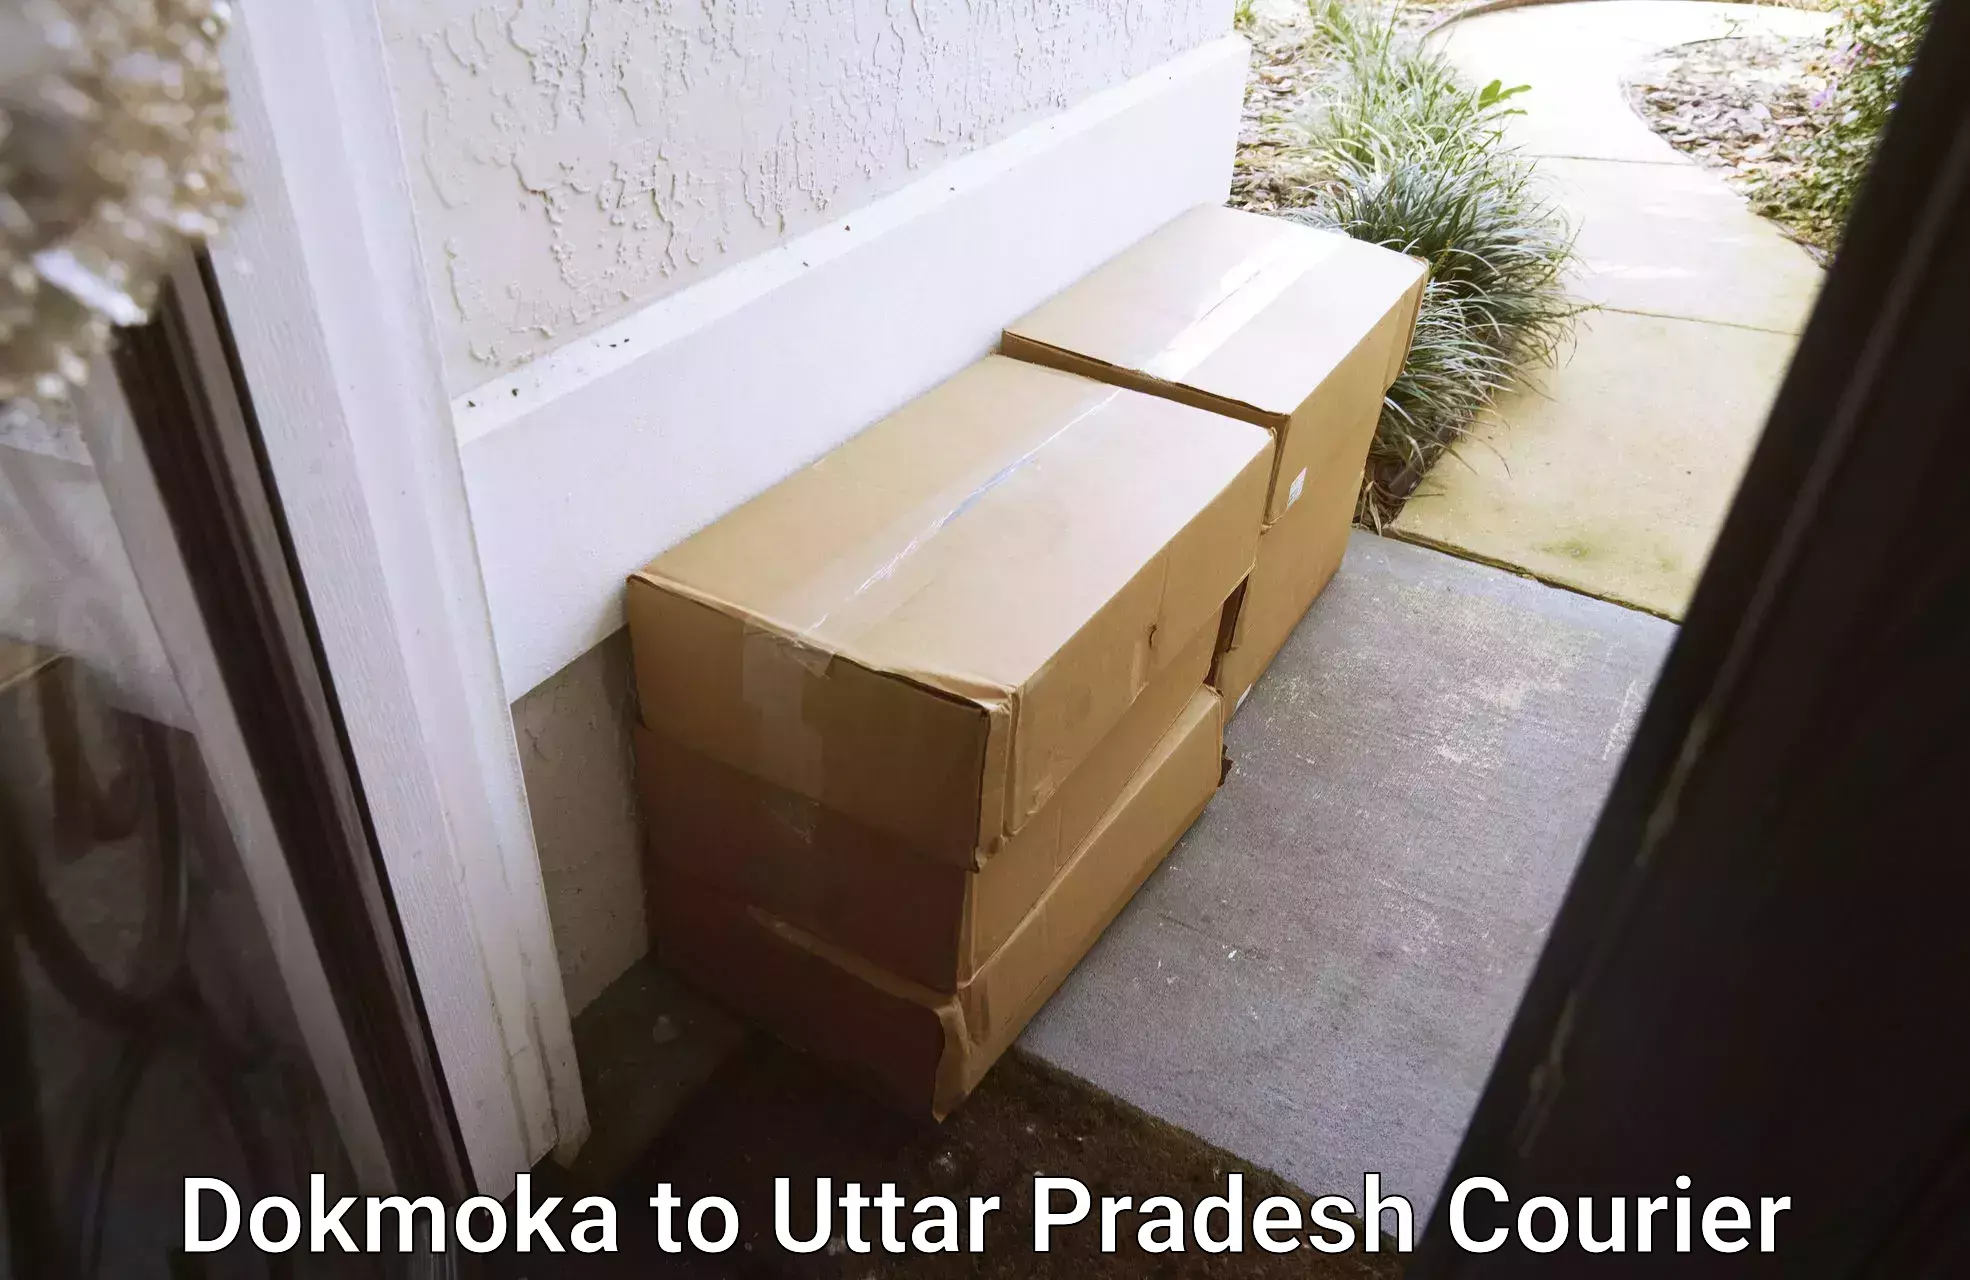 Courier insurance Dokmoka to Varanasi